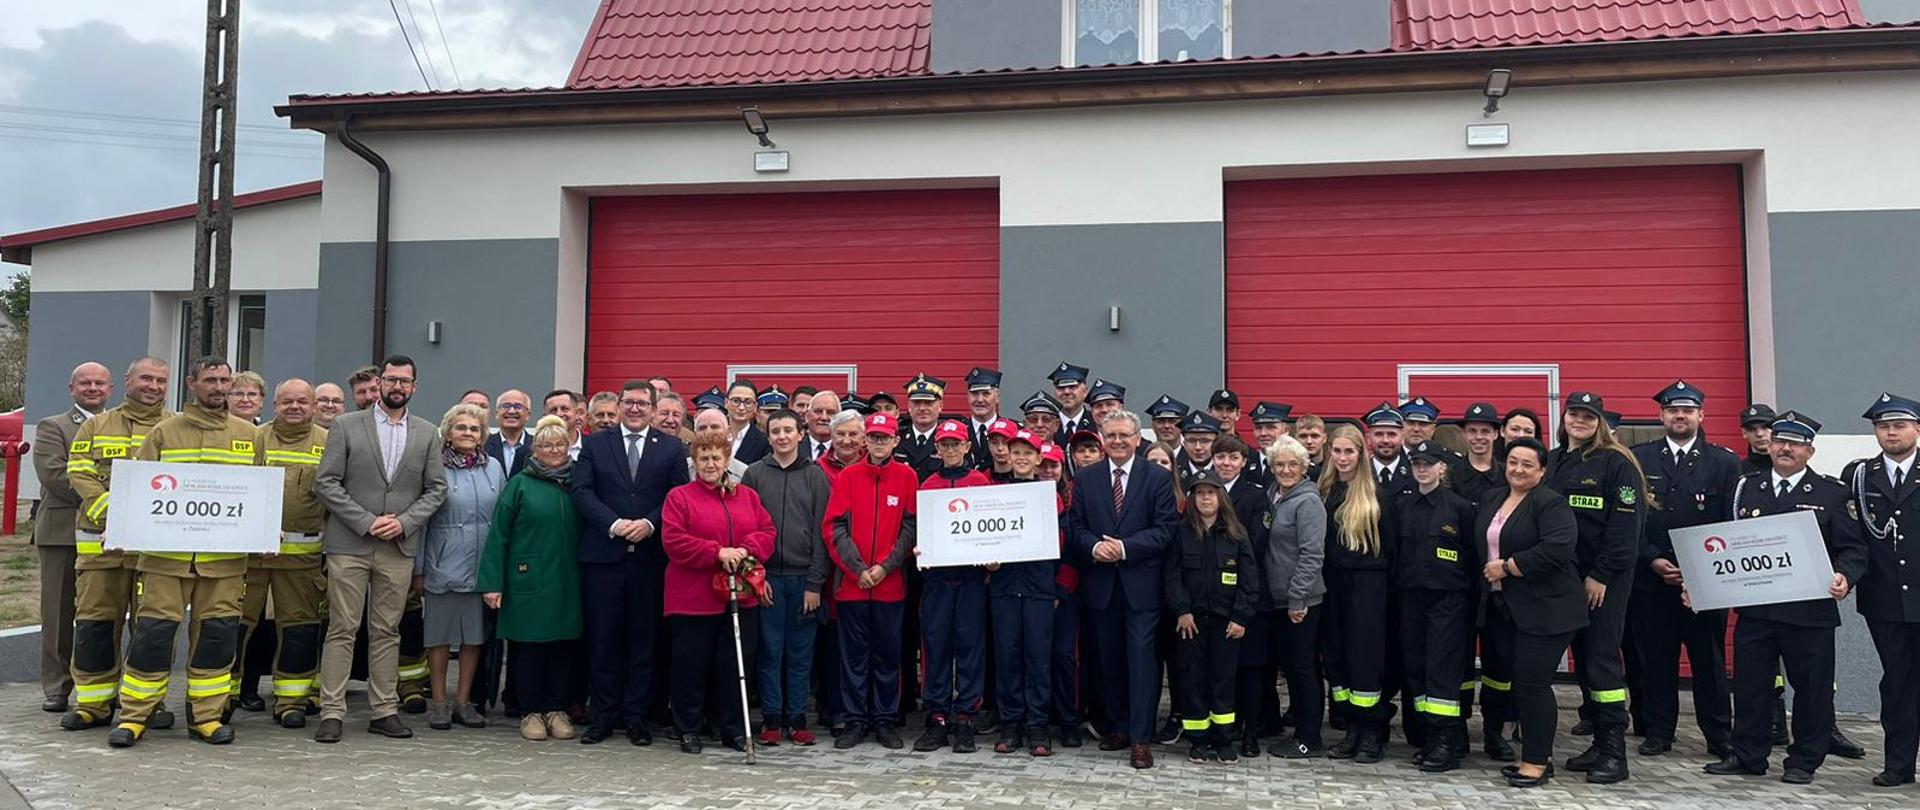 Uroczysta zbiórka z okazji otwarcia nowego pomieszczenia garażowego w jednostce Ochotniczej Straży Pożarnej w Wierzchowie, a także otwarcia zmodernizowanej i rozbudowanej siedziby Ochotniczej Straży Pożarnej w Świerczynie